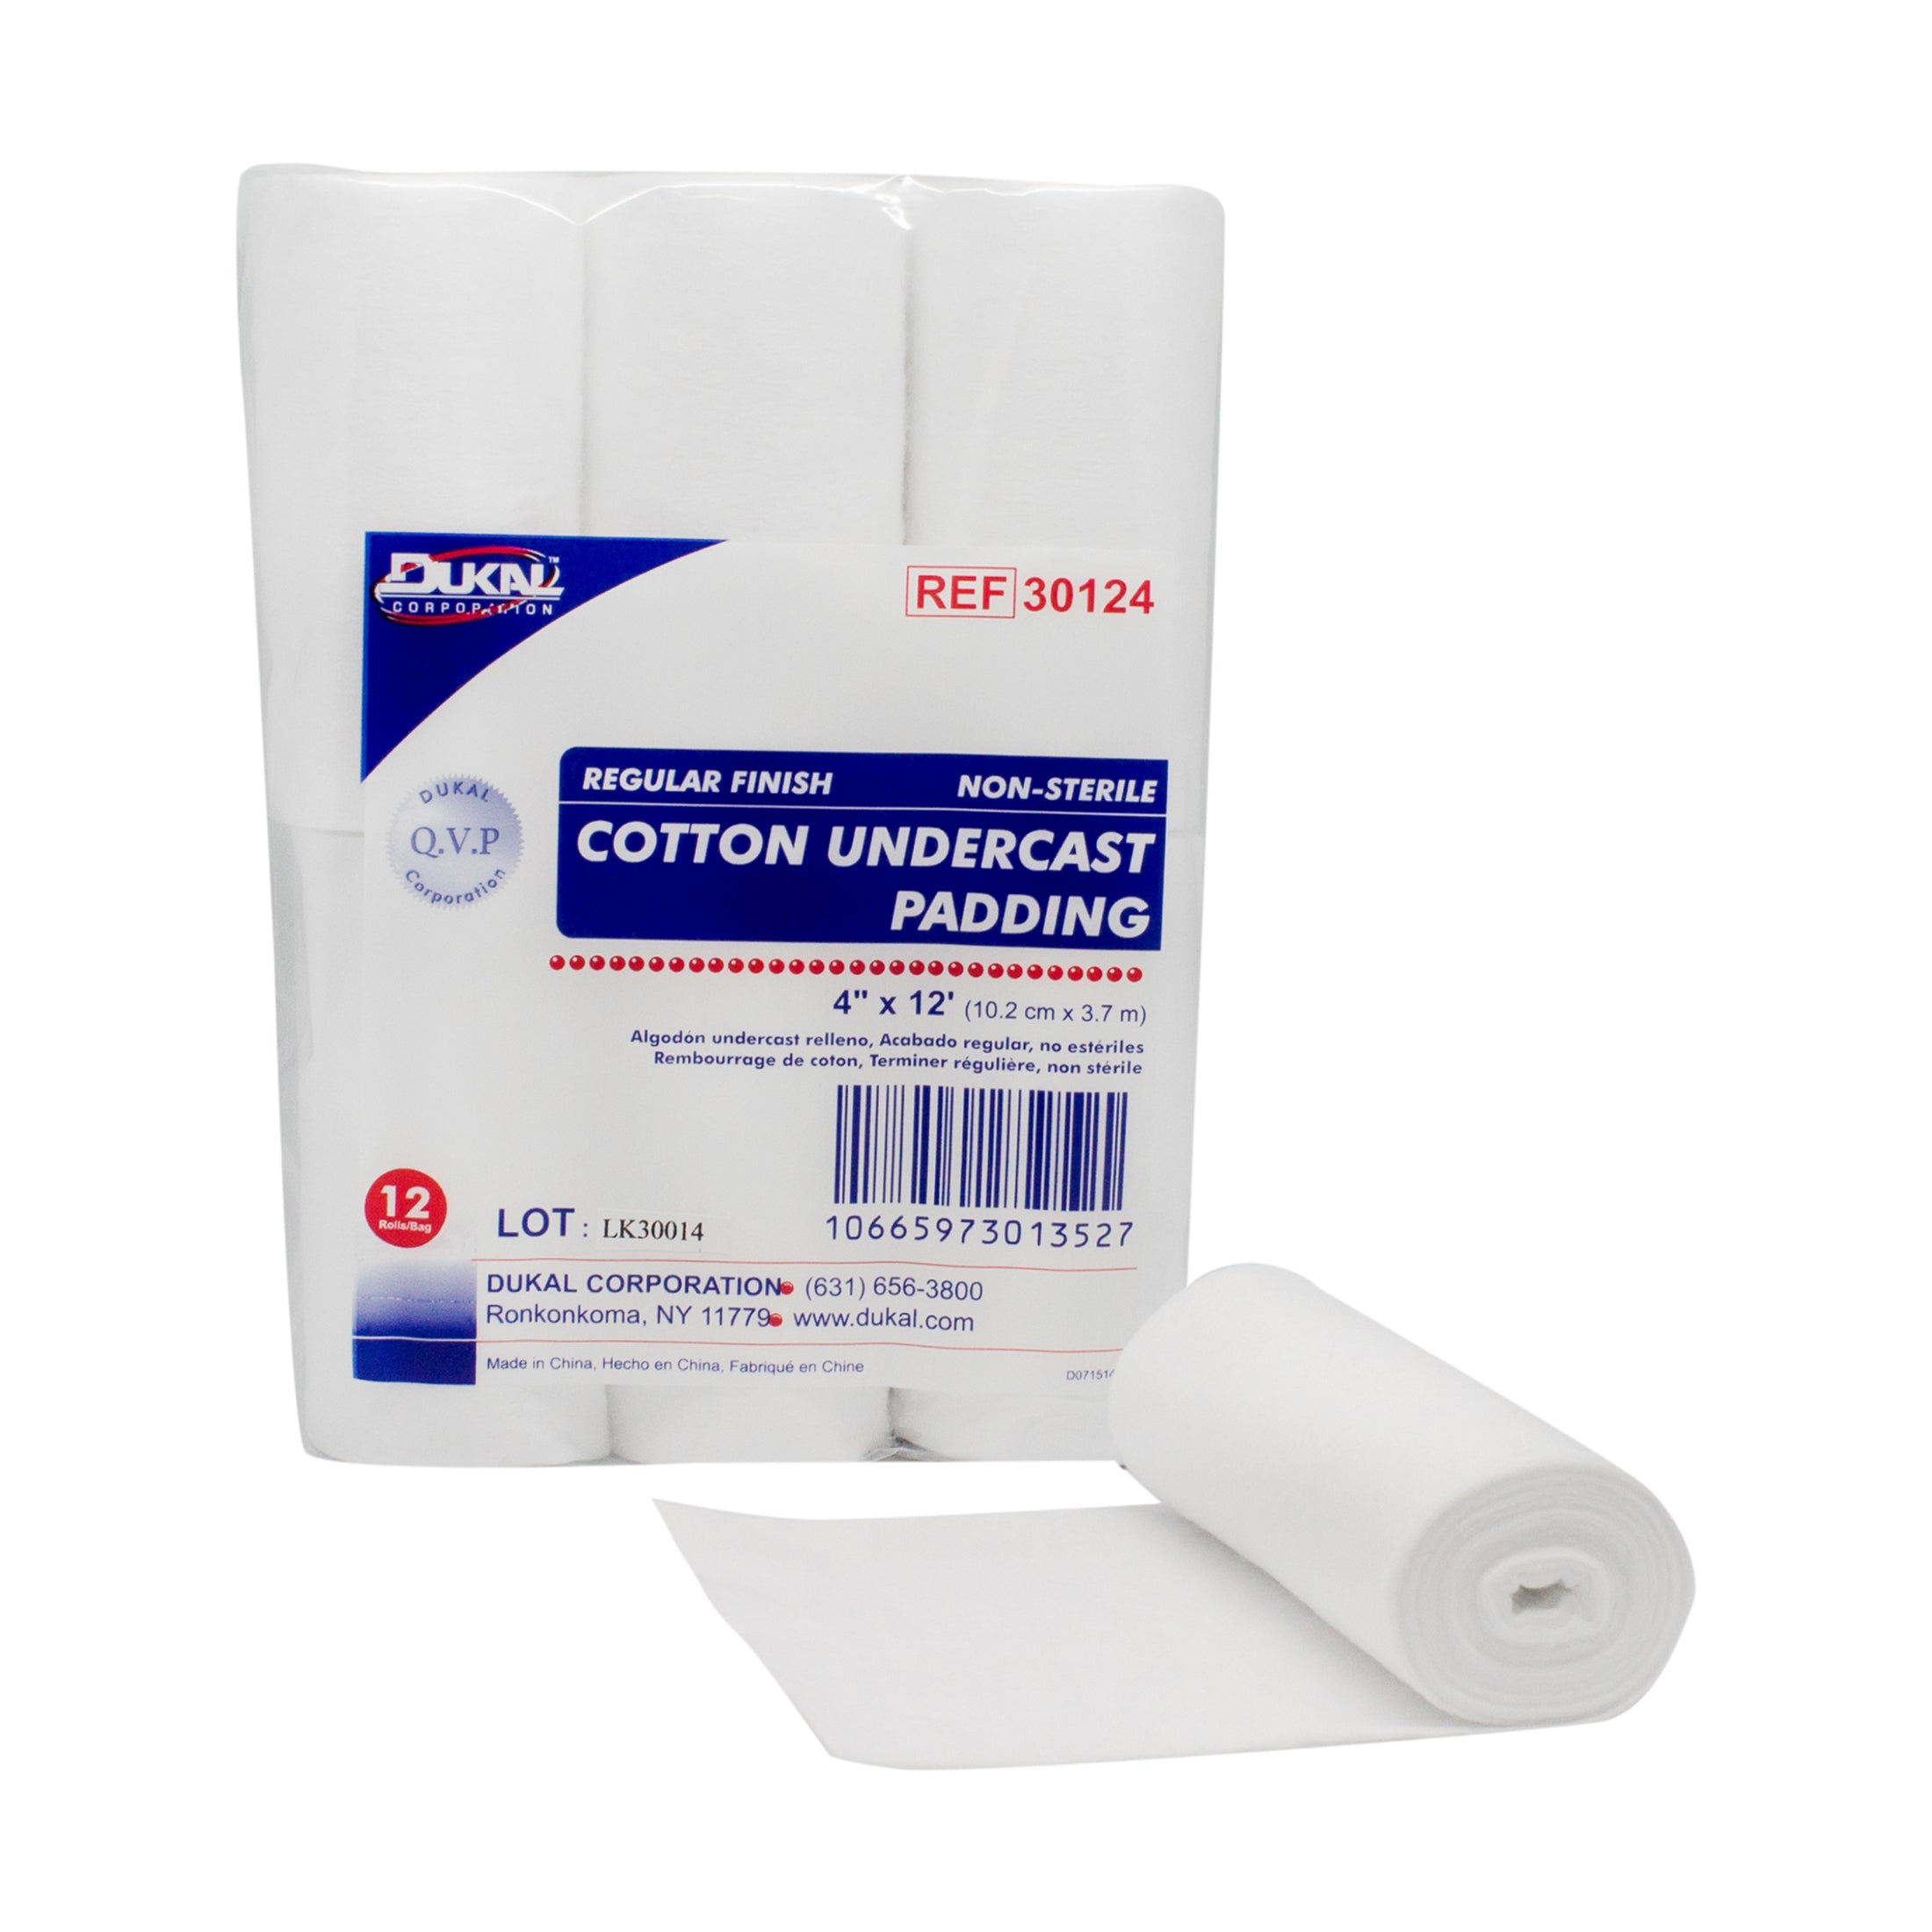 Cotton Undercast Padding 4" x 12', Non-Sterile